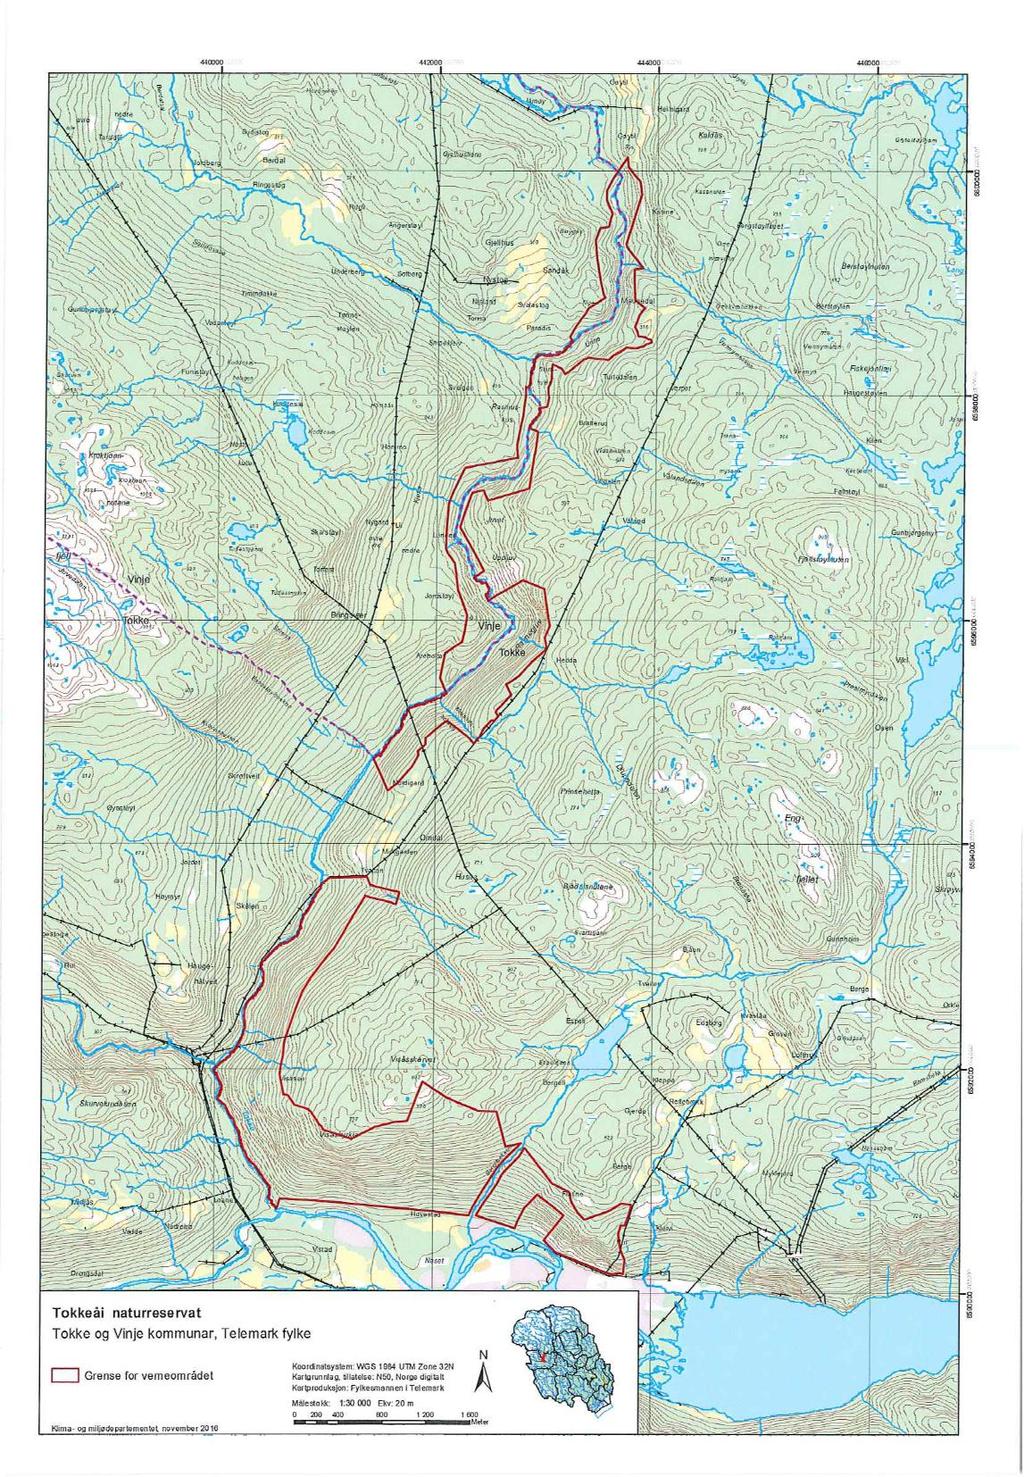 Kartet viser omfanget av Tokkeåi naturreservat slik det